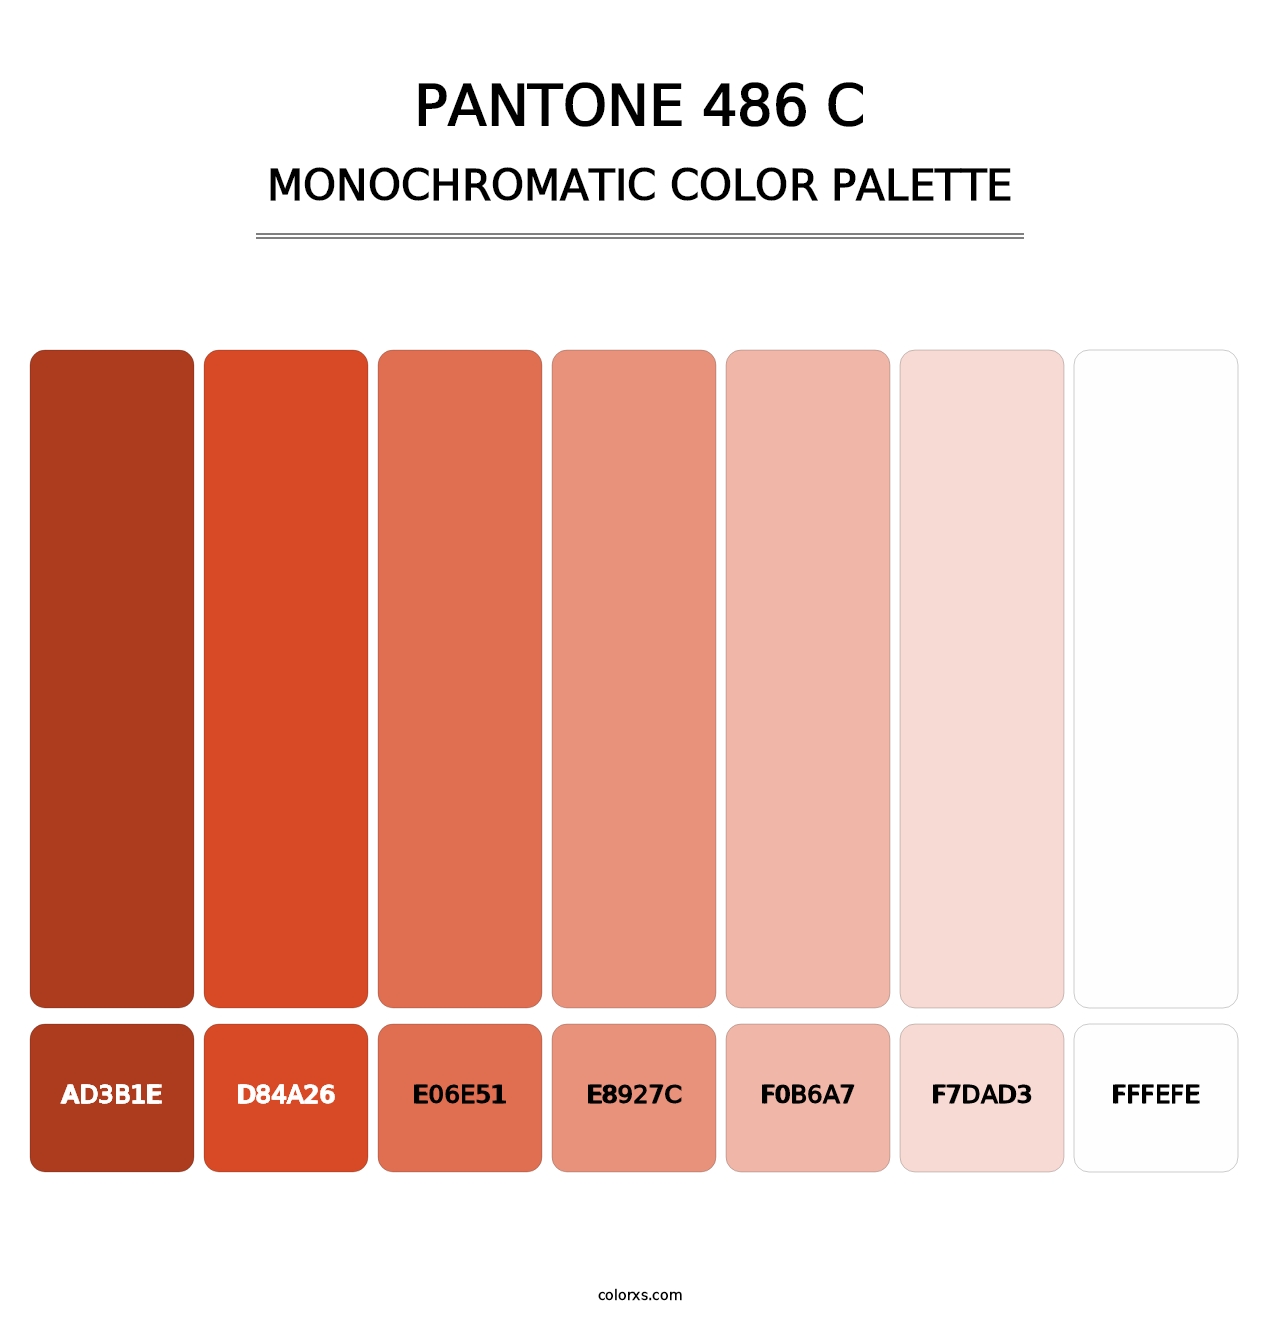 PANTONE 486 C - Monochromatic Color Palette